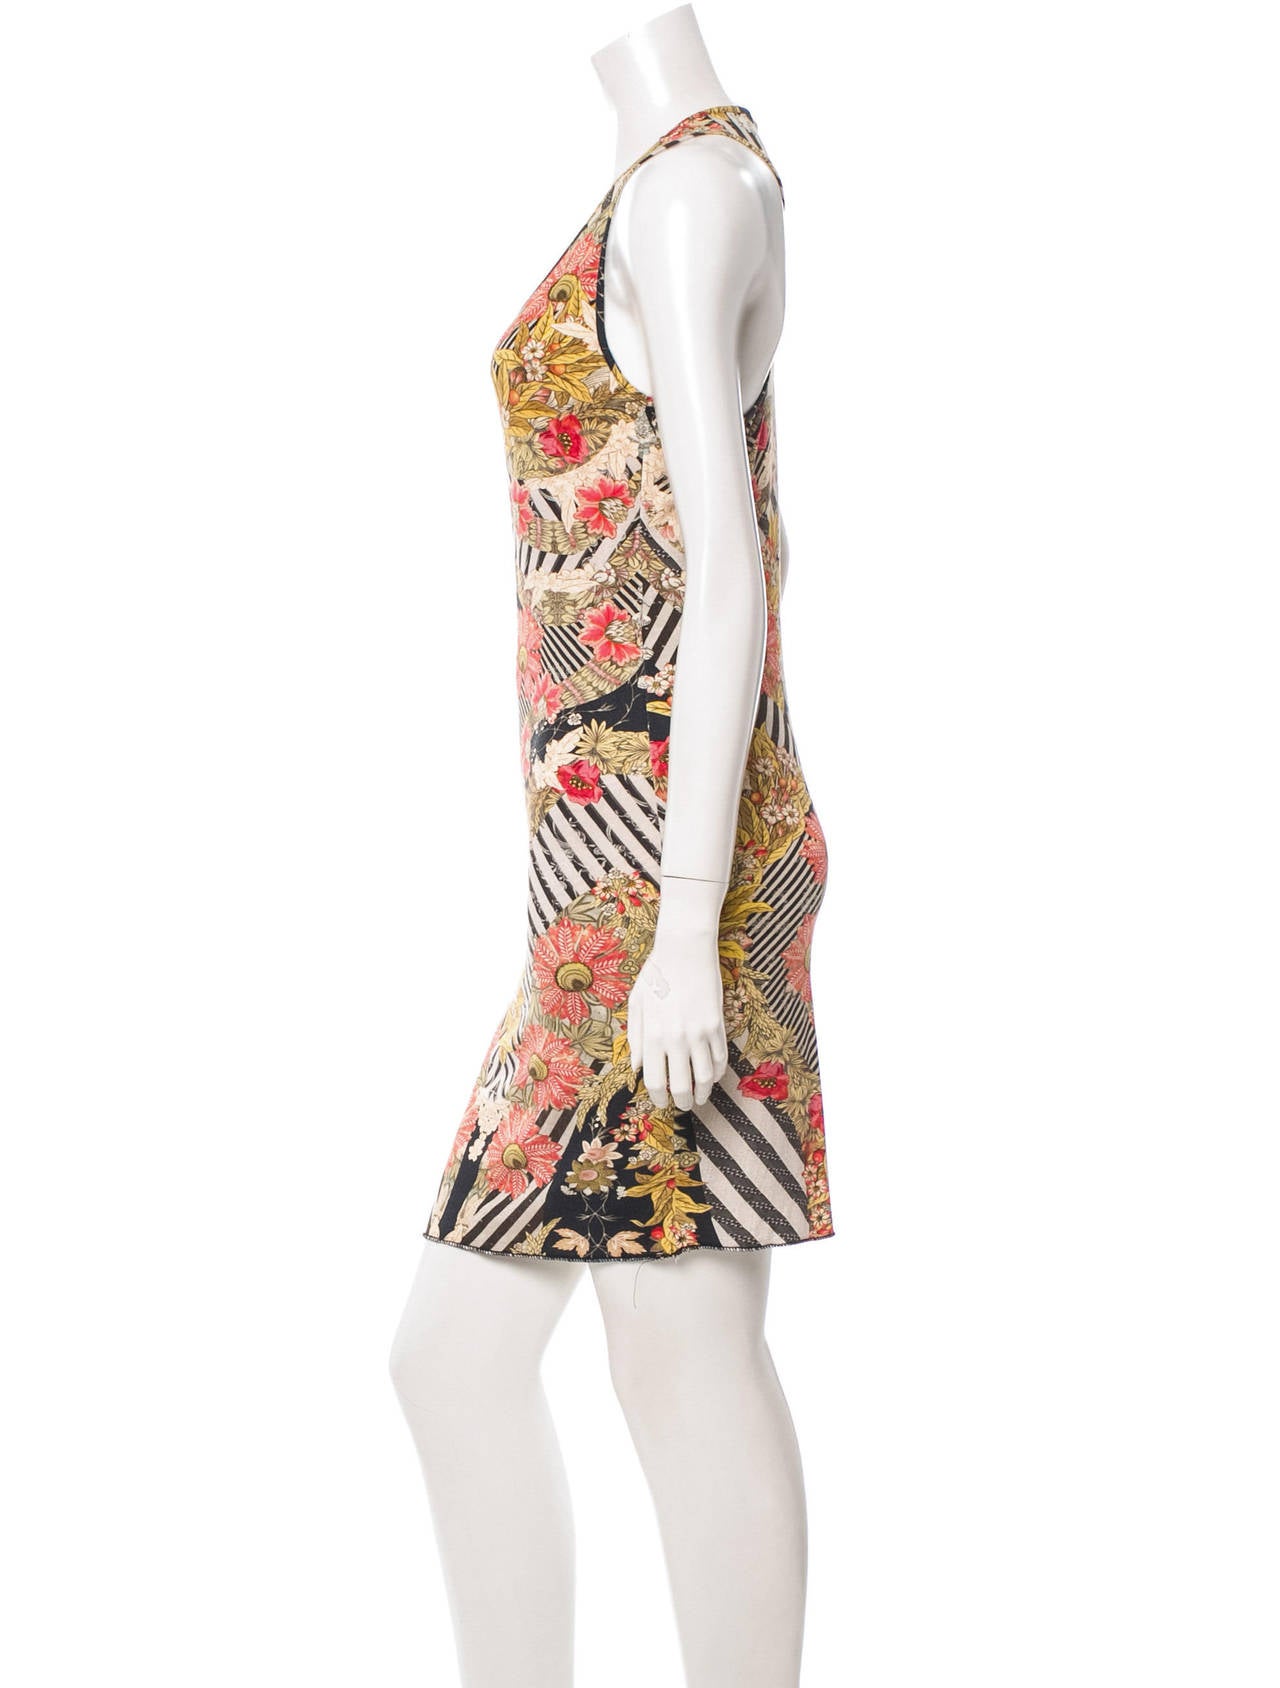 Alexander McQueen sleeveless dress with harvest print.

Measurements: Bust 24”, Waist 23”, Hip 23”, Length 38.5”